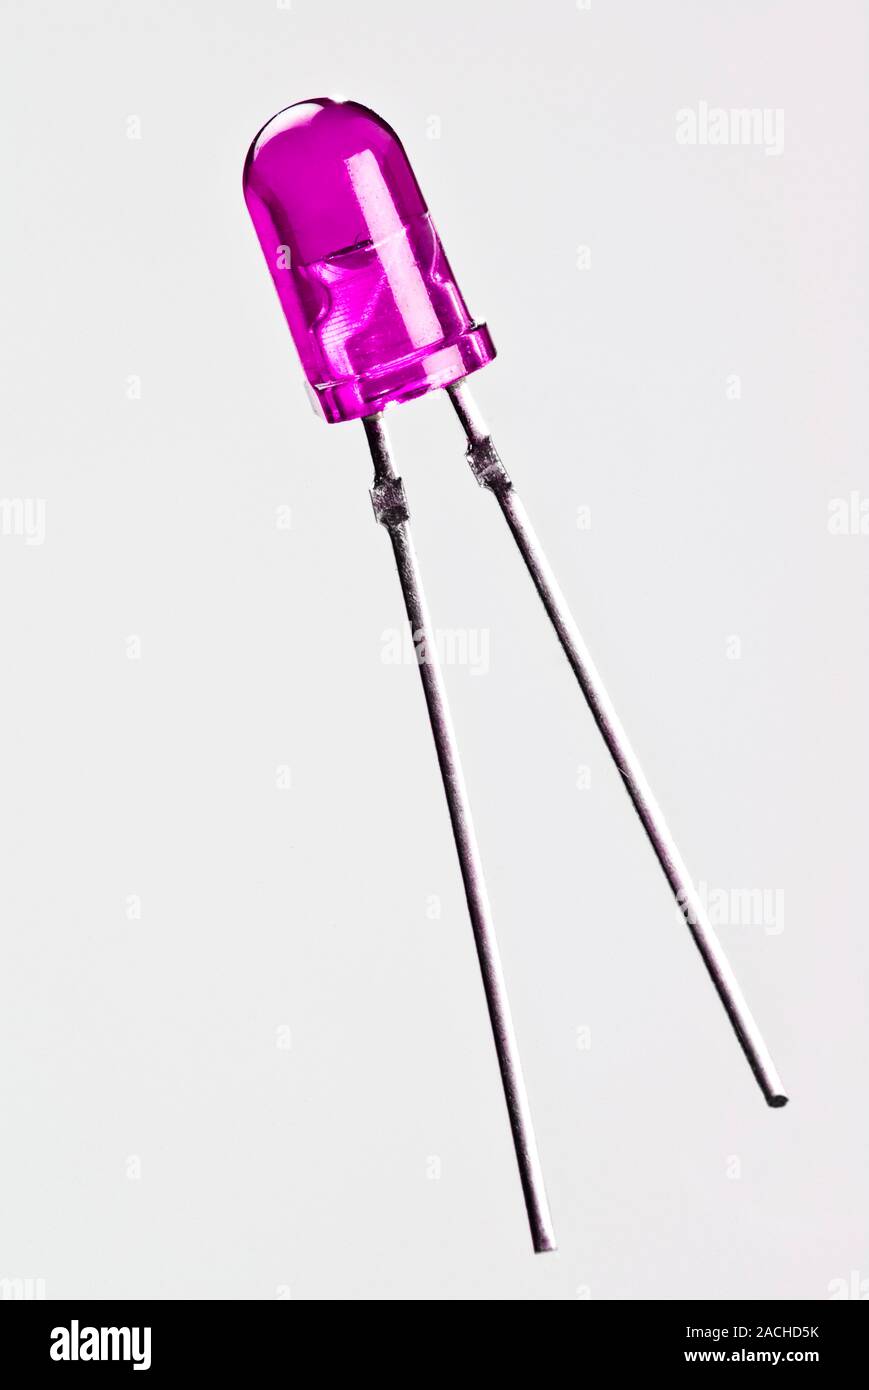 Viola diodo emettitore di luce. I diodi emettitori di luce (LED) sono fatti  di due strati a pellicola sottile di materiale semiconduttore impregnato  con impurità che Foto stock - Alamy